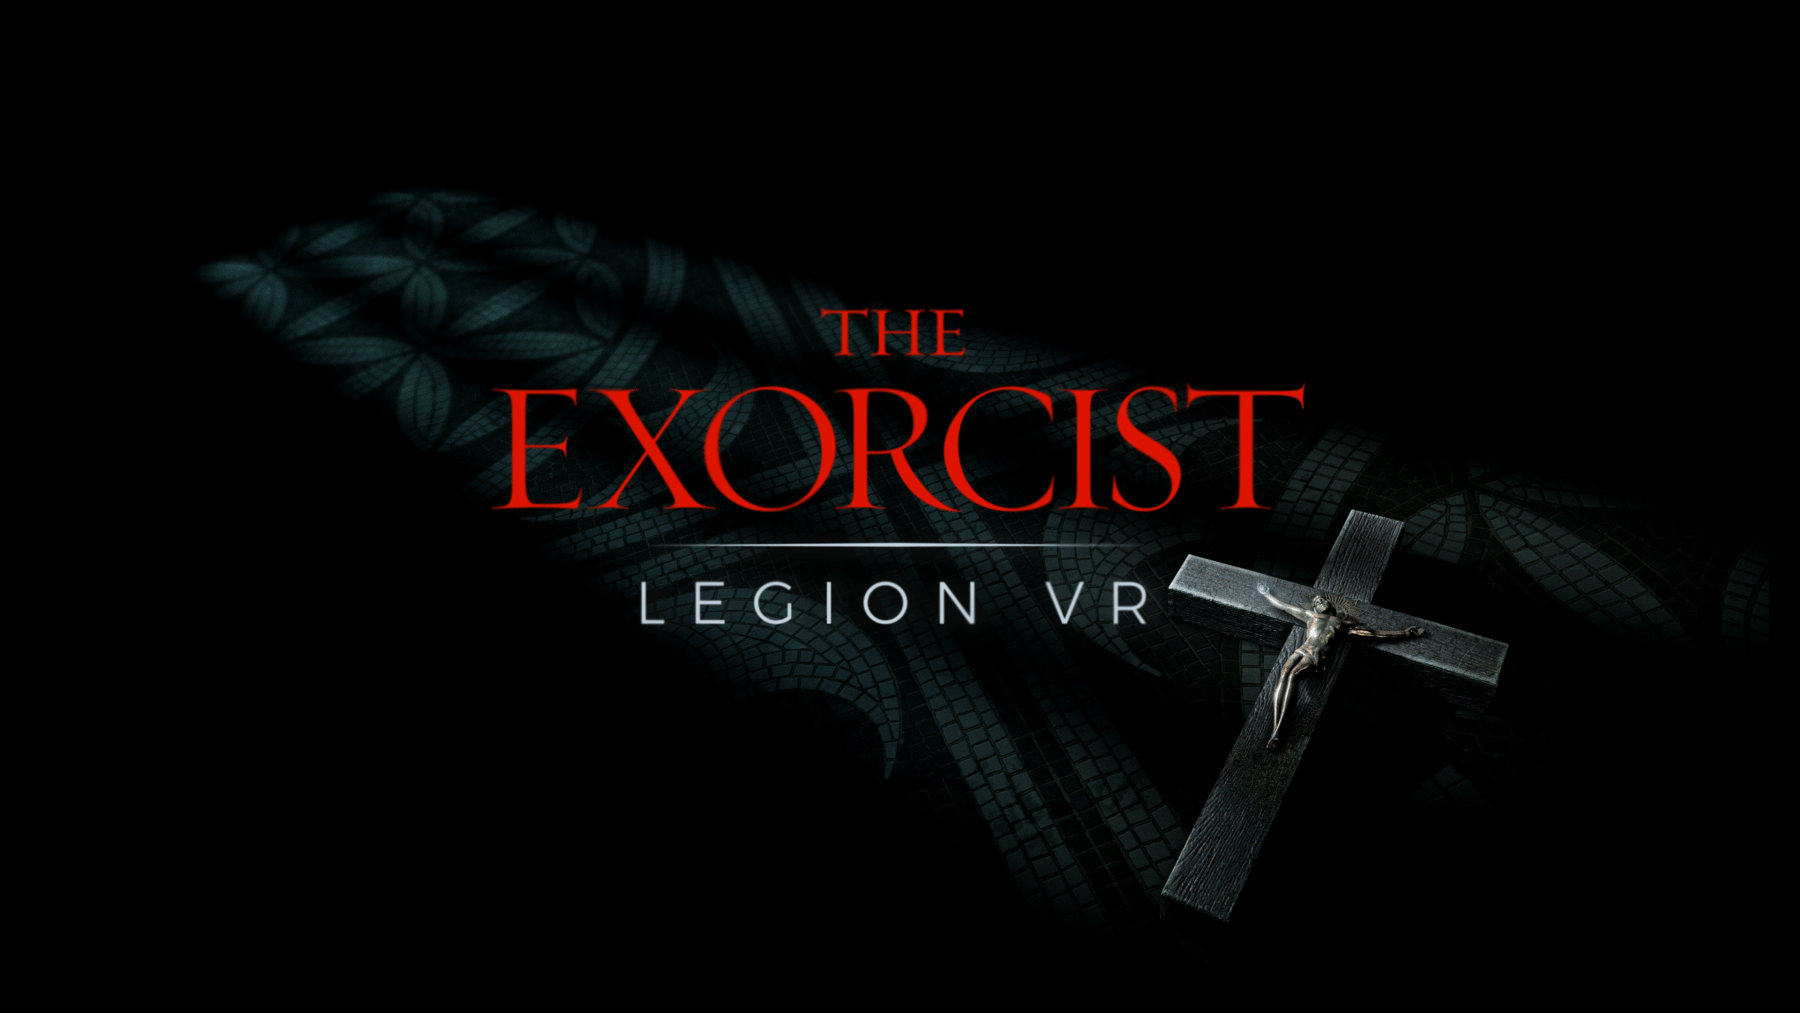 The Exorcist: Legion VR llegará a Vive and Rift a finales de este mes